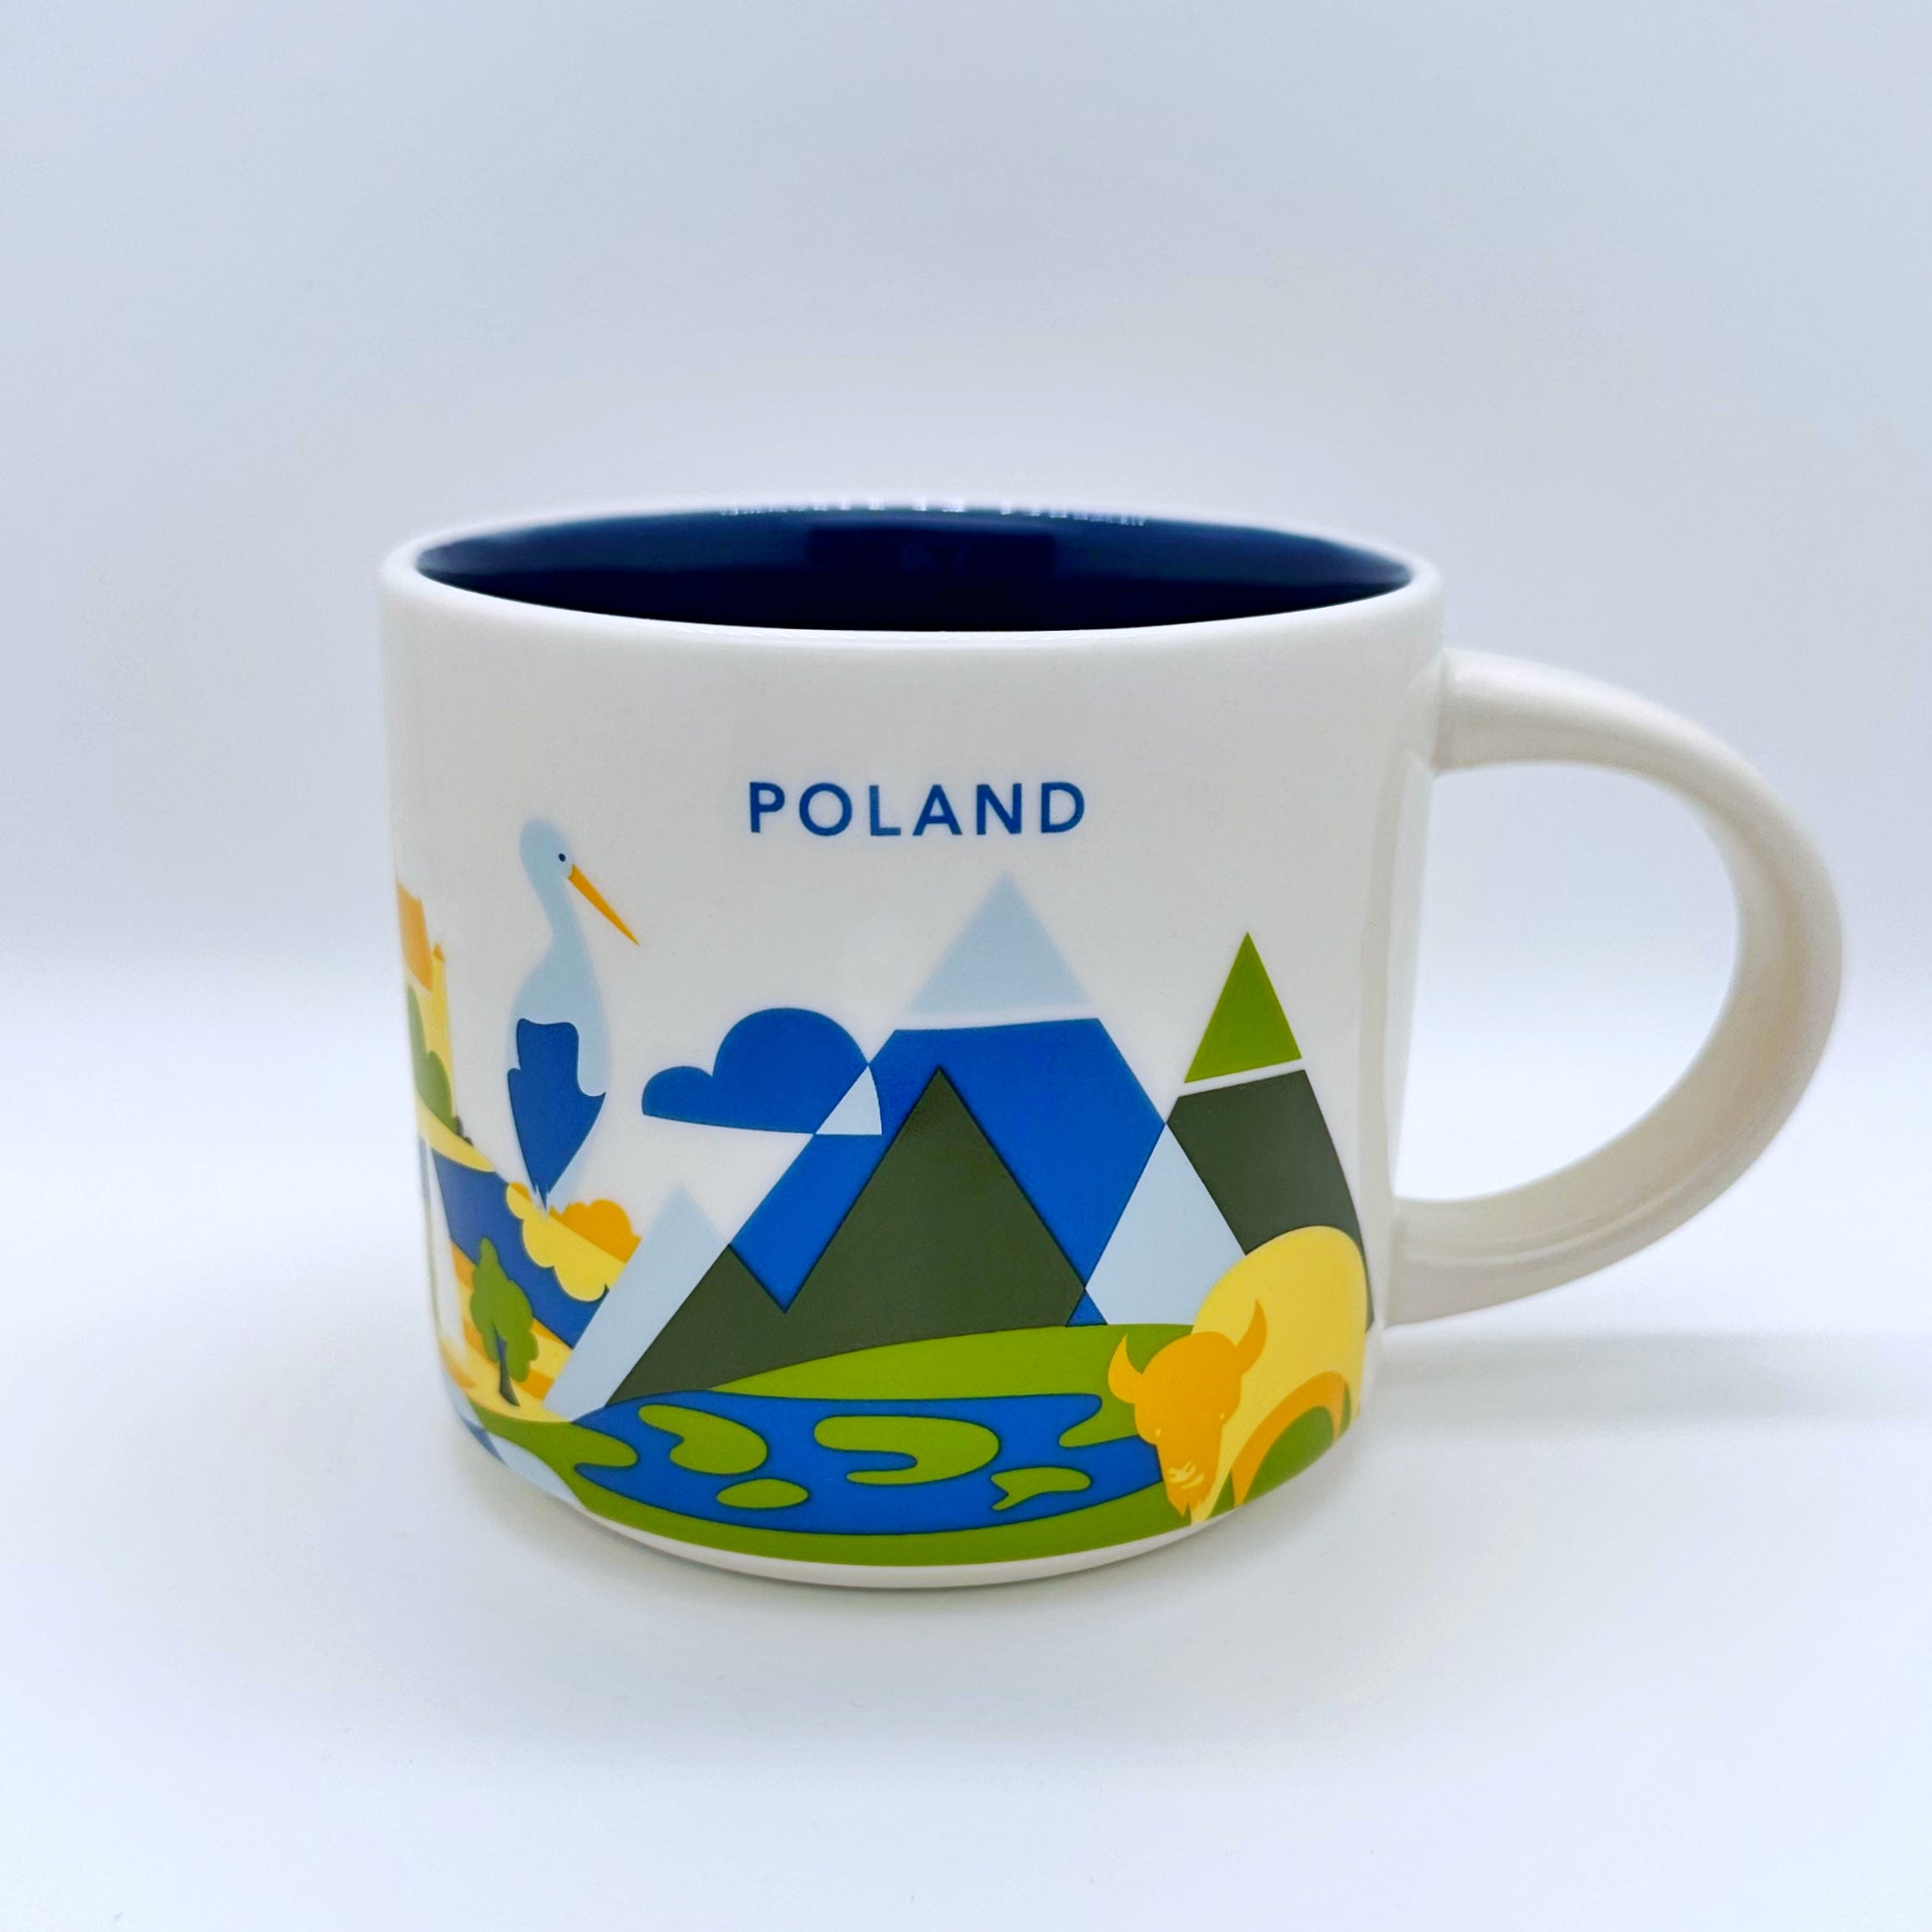 Kaffee Tee und Cappuccino Tasse von Starbucks mit gemalten Bildern aus dem Land Poland